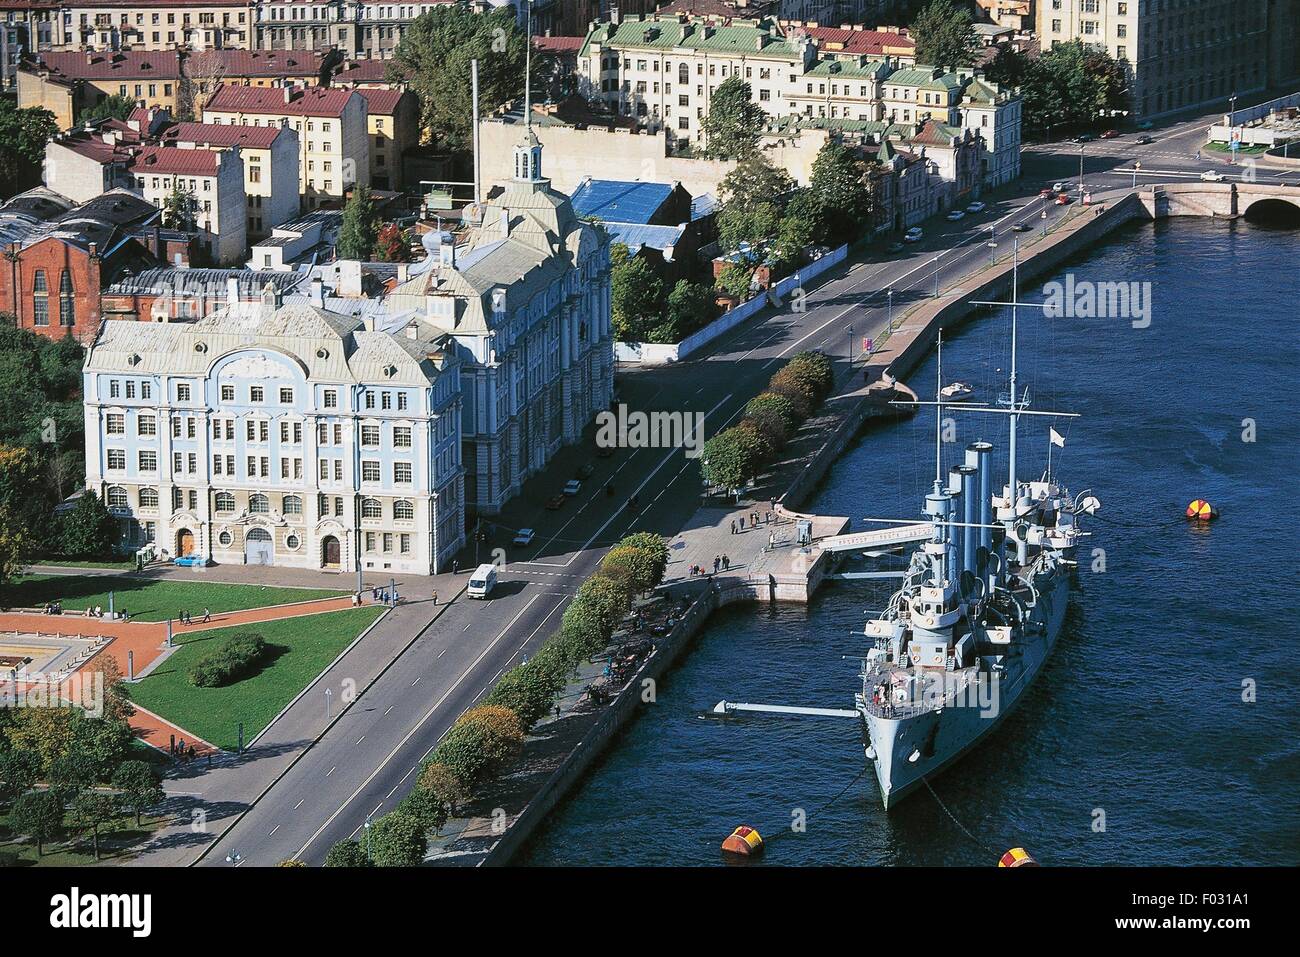 Vue aérienne de l'Académie Navale et Cruiser Aurora (Krejser Avrora ; 1900) sur la rivière Neva - Saint-Pétersbourg centre historique (Liste du patrimoine mondial de l'UNESCO, 1990), Russie Banque D'Images